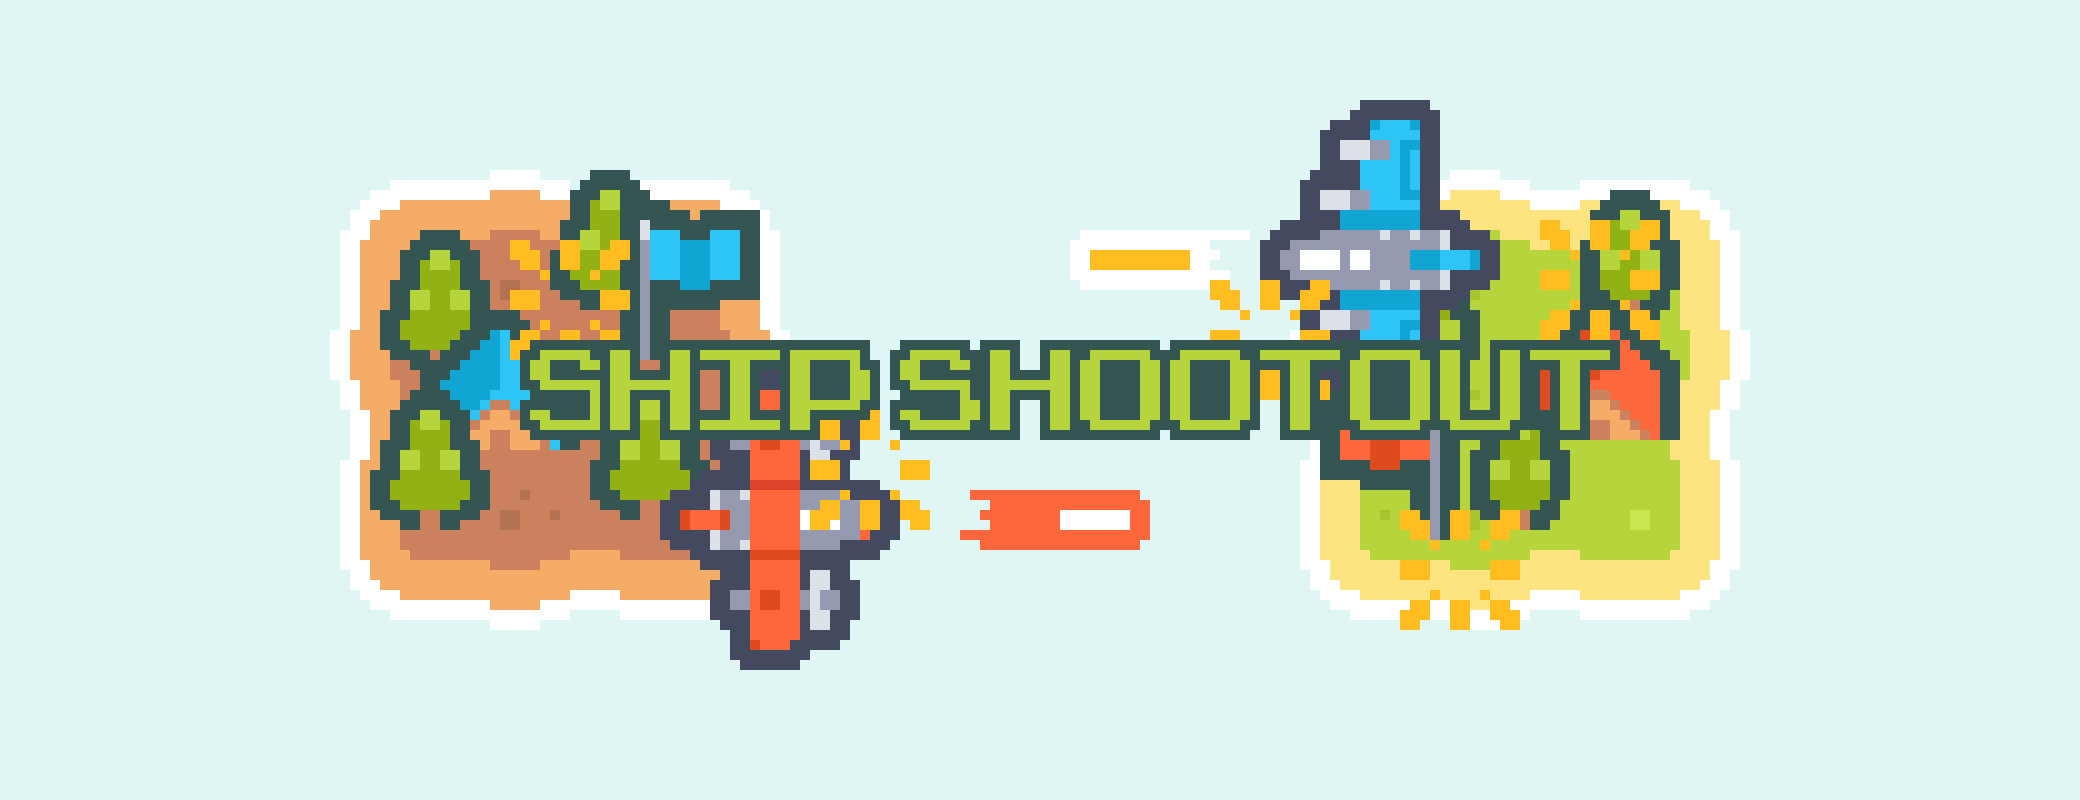 ship shootout